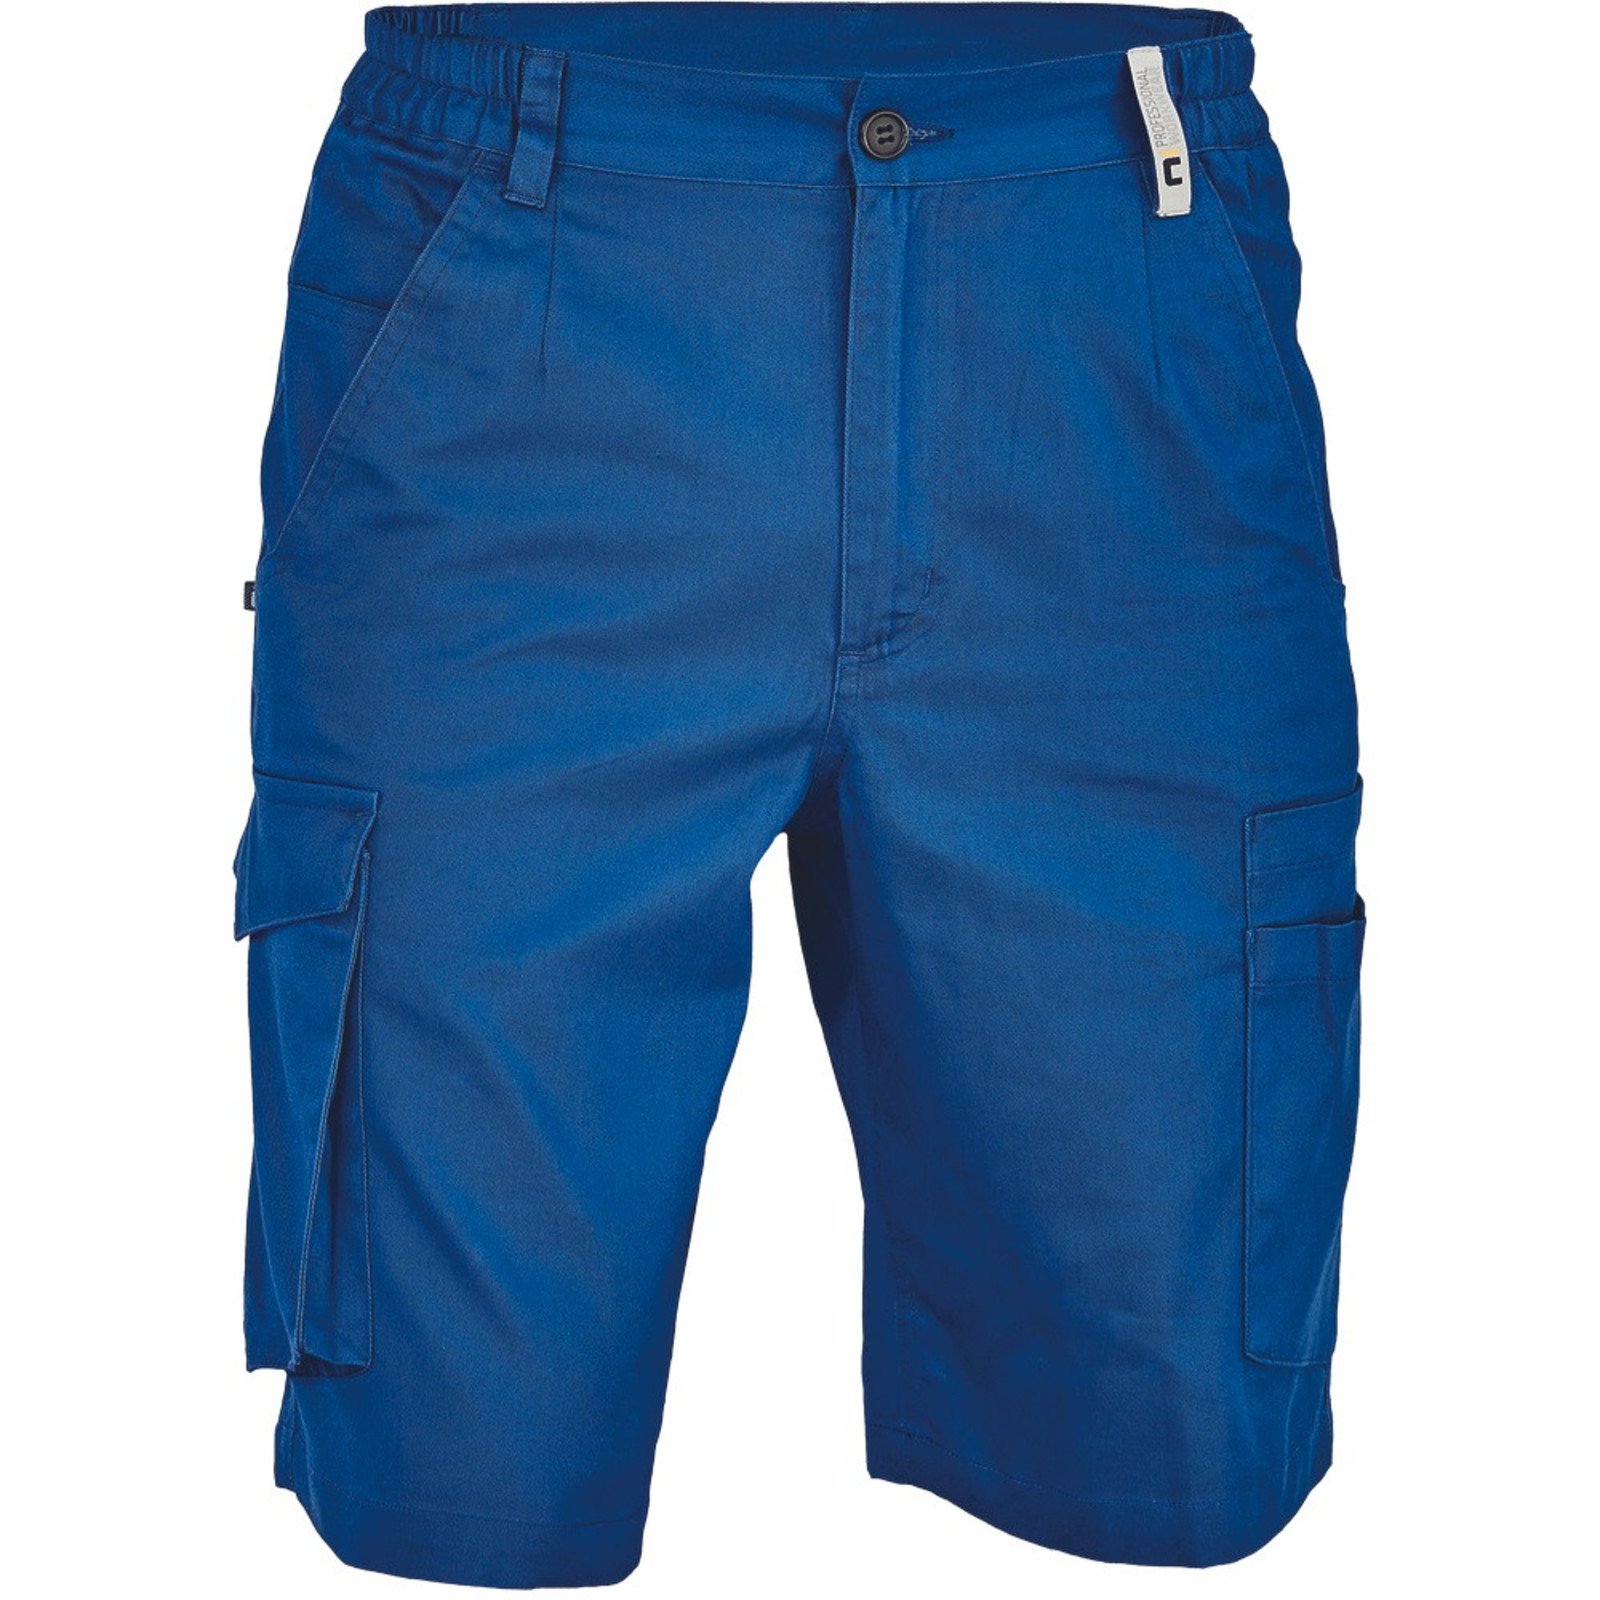 Pánske pracovné šortky Cerva Ciudades Basic Gijon - veľkosť: 52, farba: royal blue